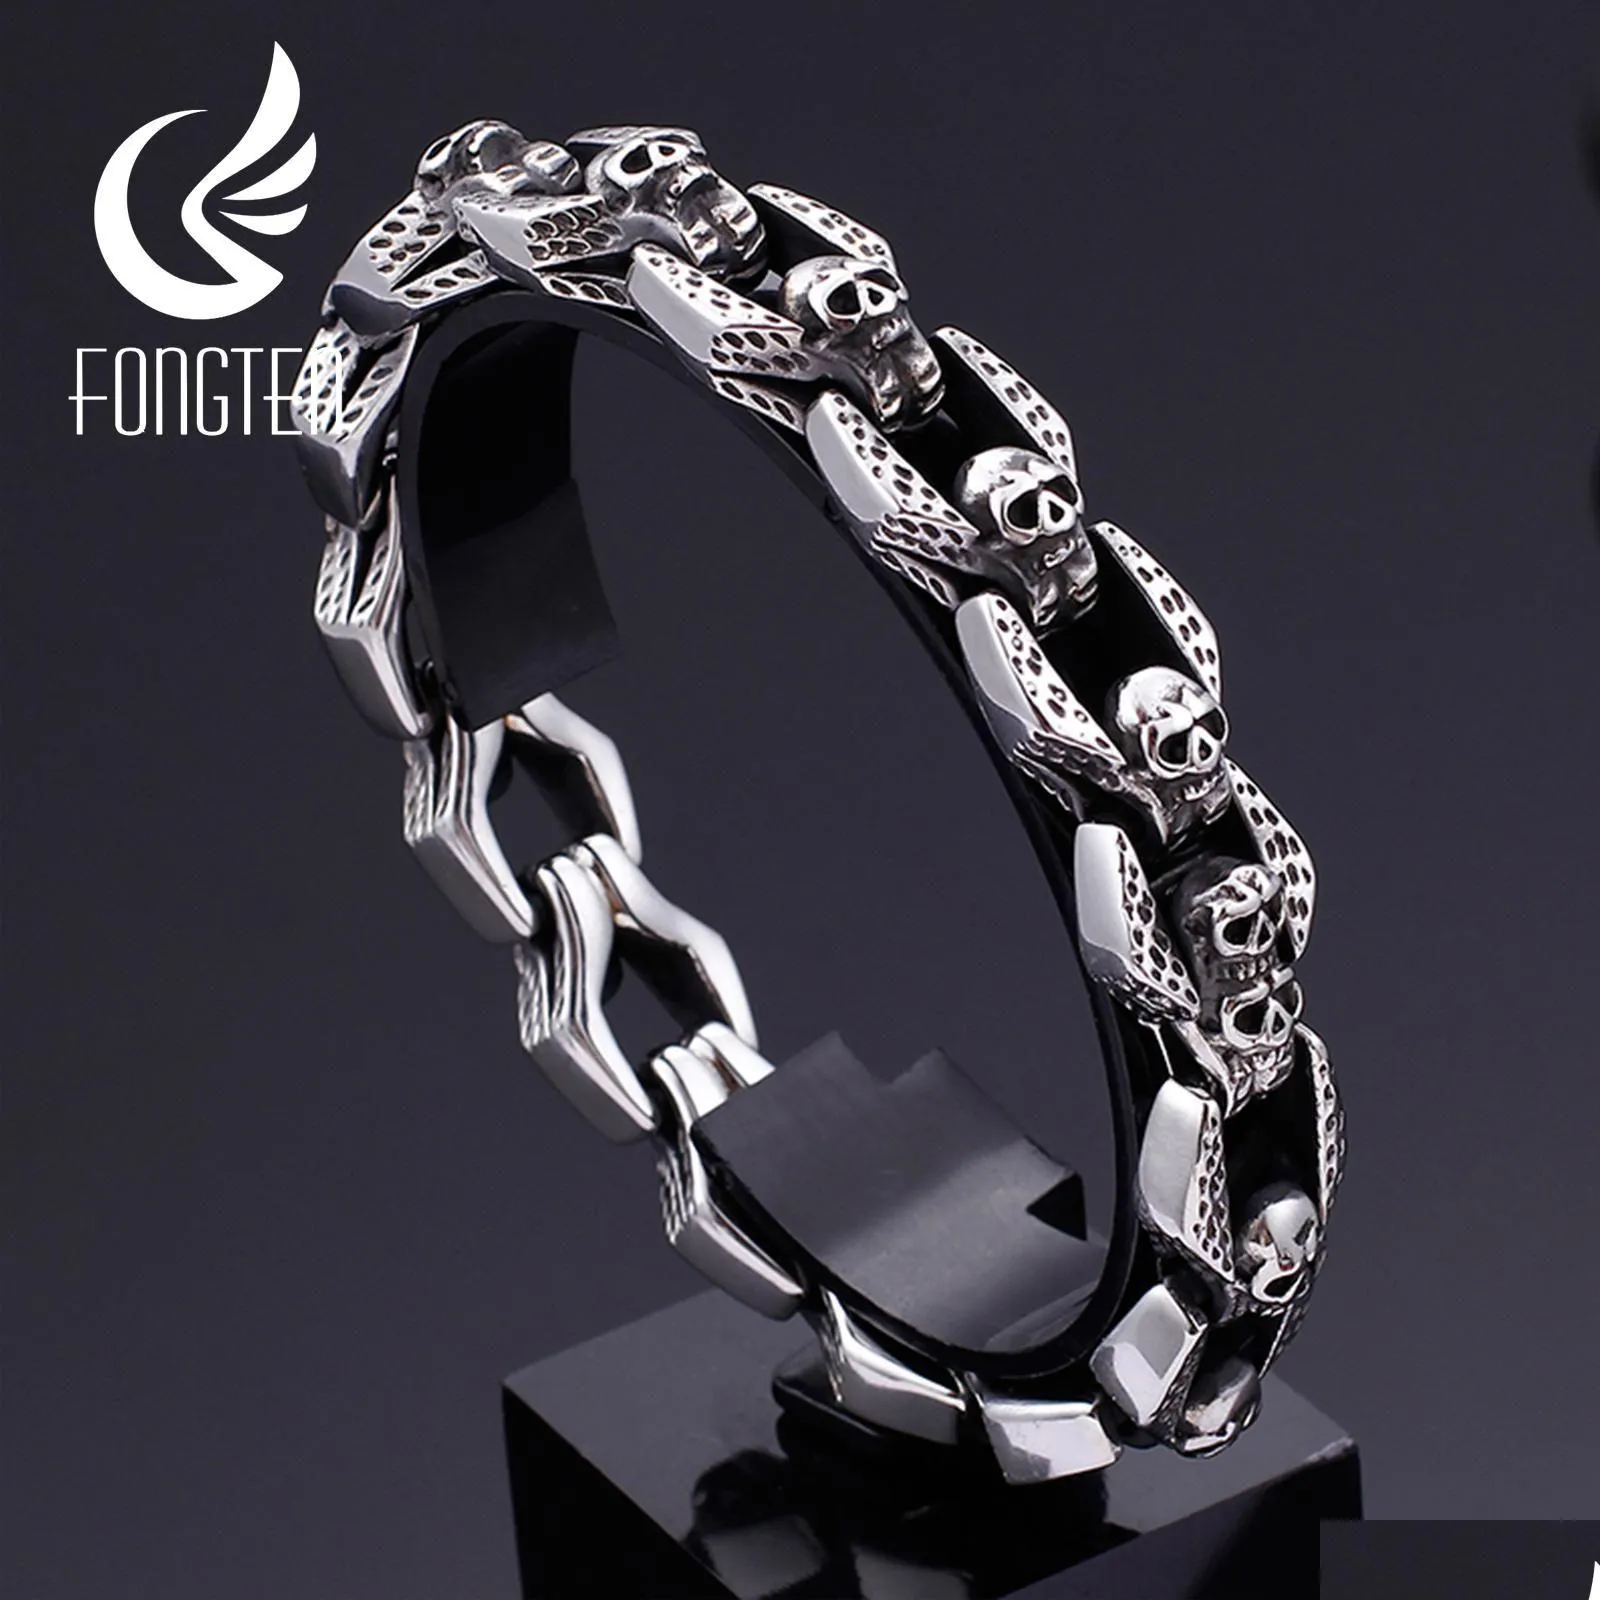 Bracelets Fongten Skull Charm Bracelet Blacken Metal Stainless Steel Wrist Band Gothic Bracelets Men Jewelry Best Friends Gift